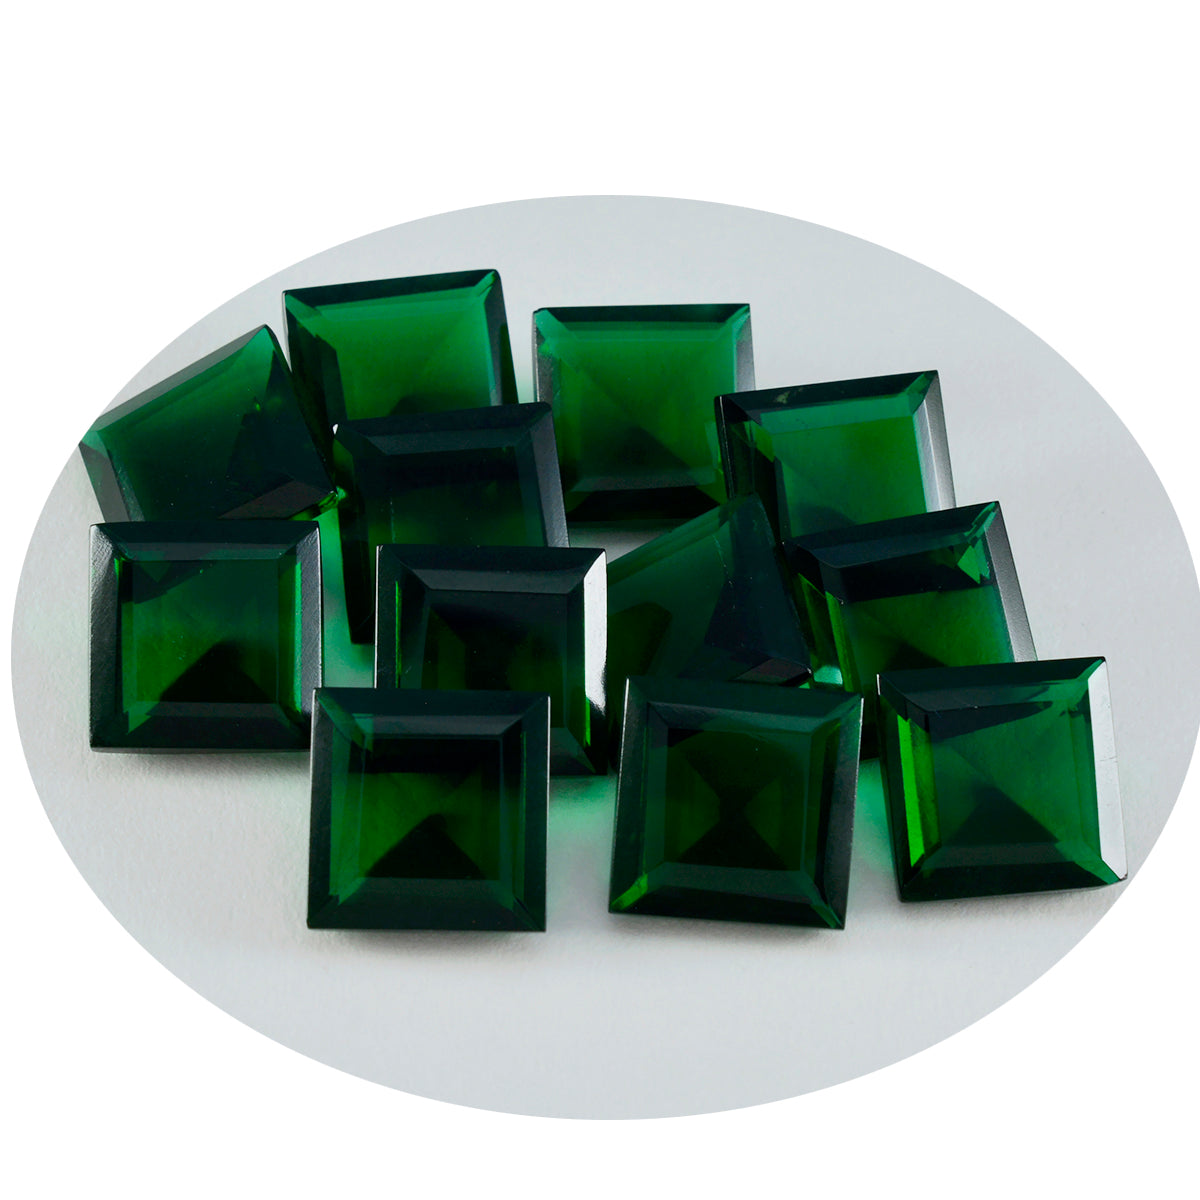 riyogems 1 шт., зеленый изумруд, граненый cz, 12x12 мм, квадратная форма, отличное качество, россыпь драгоценных камней